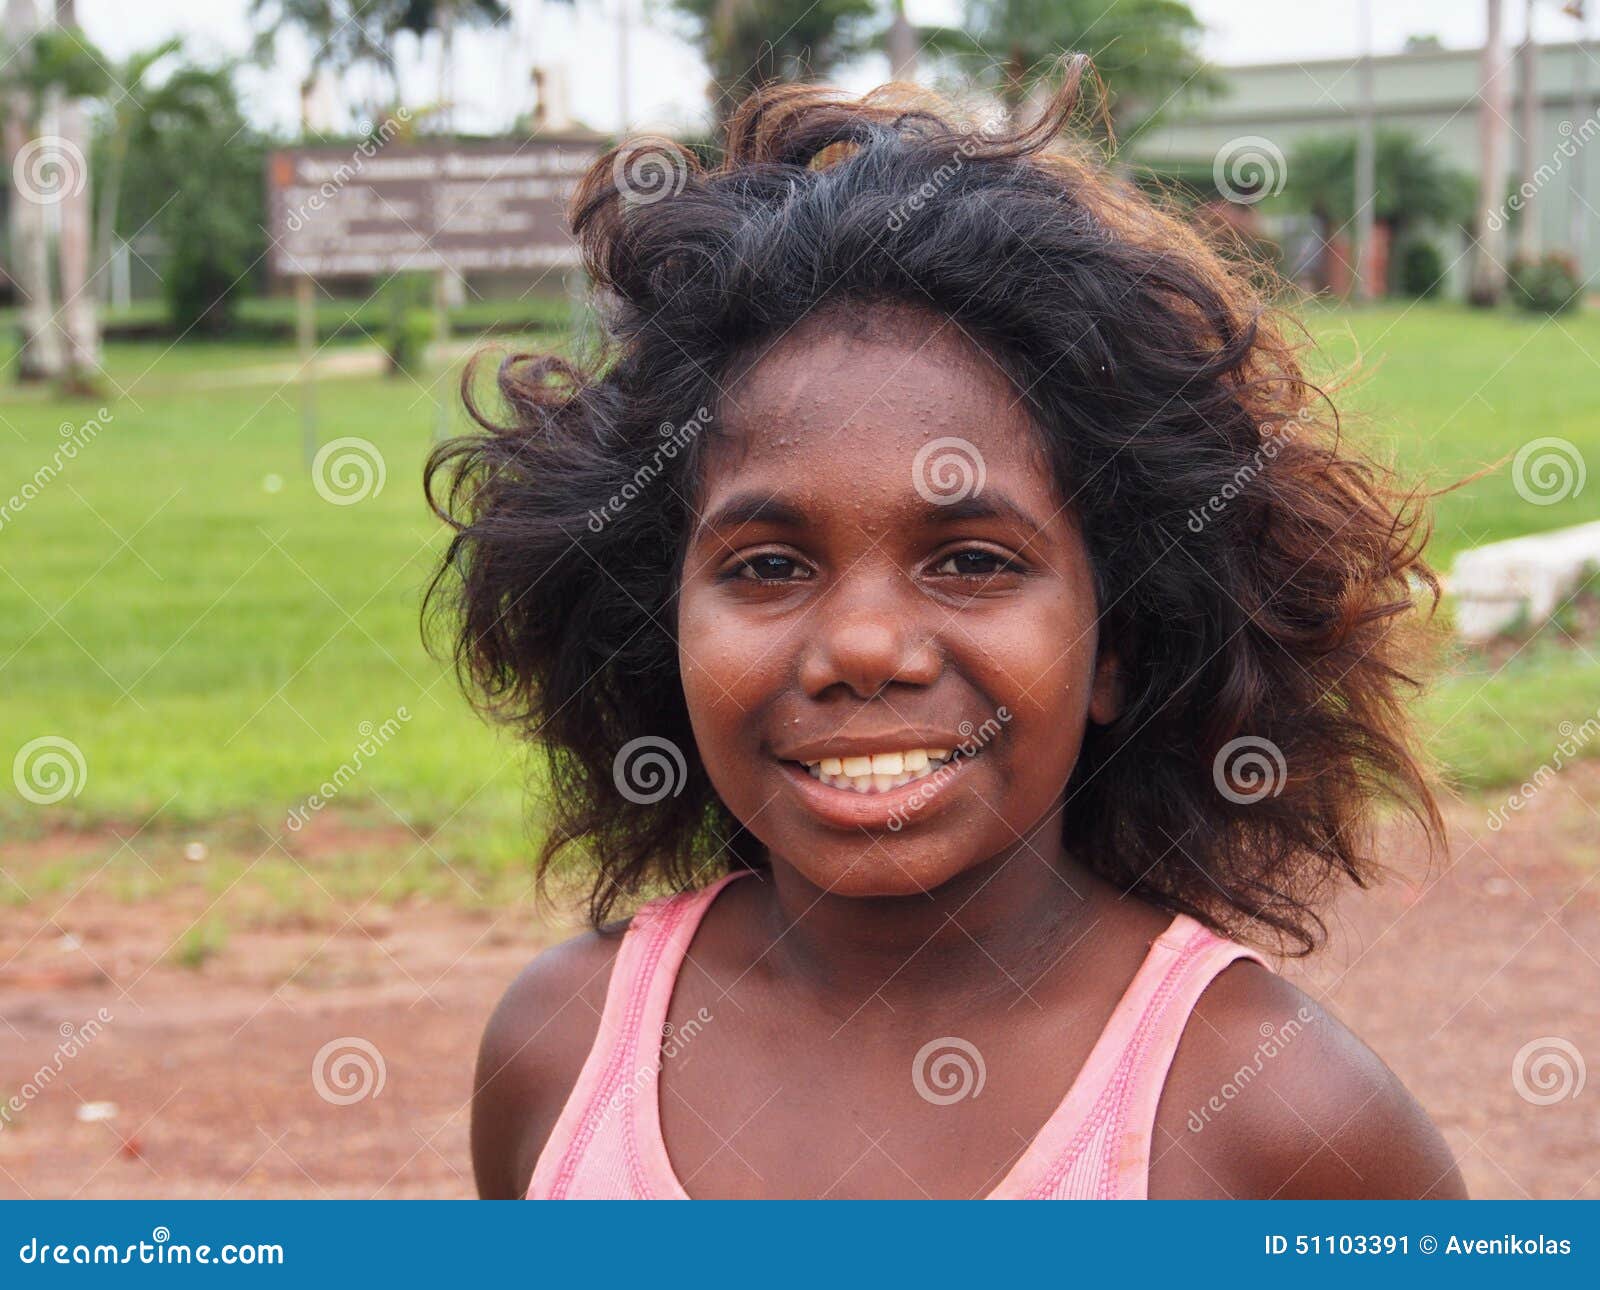 Australian Aboriginal Girls